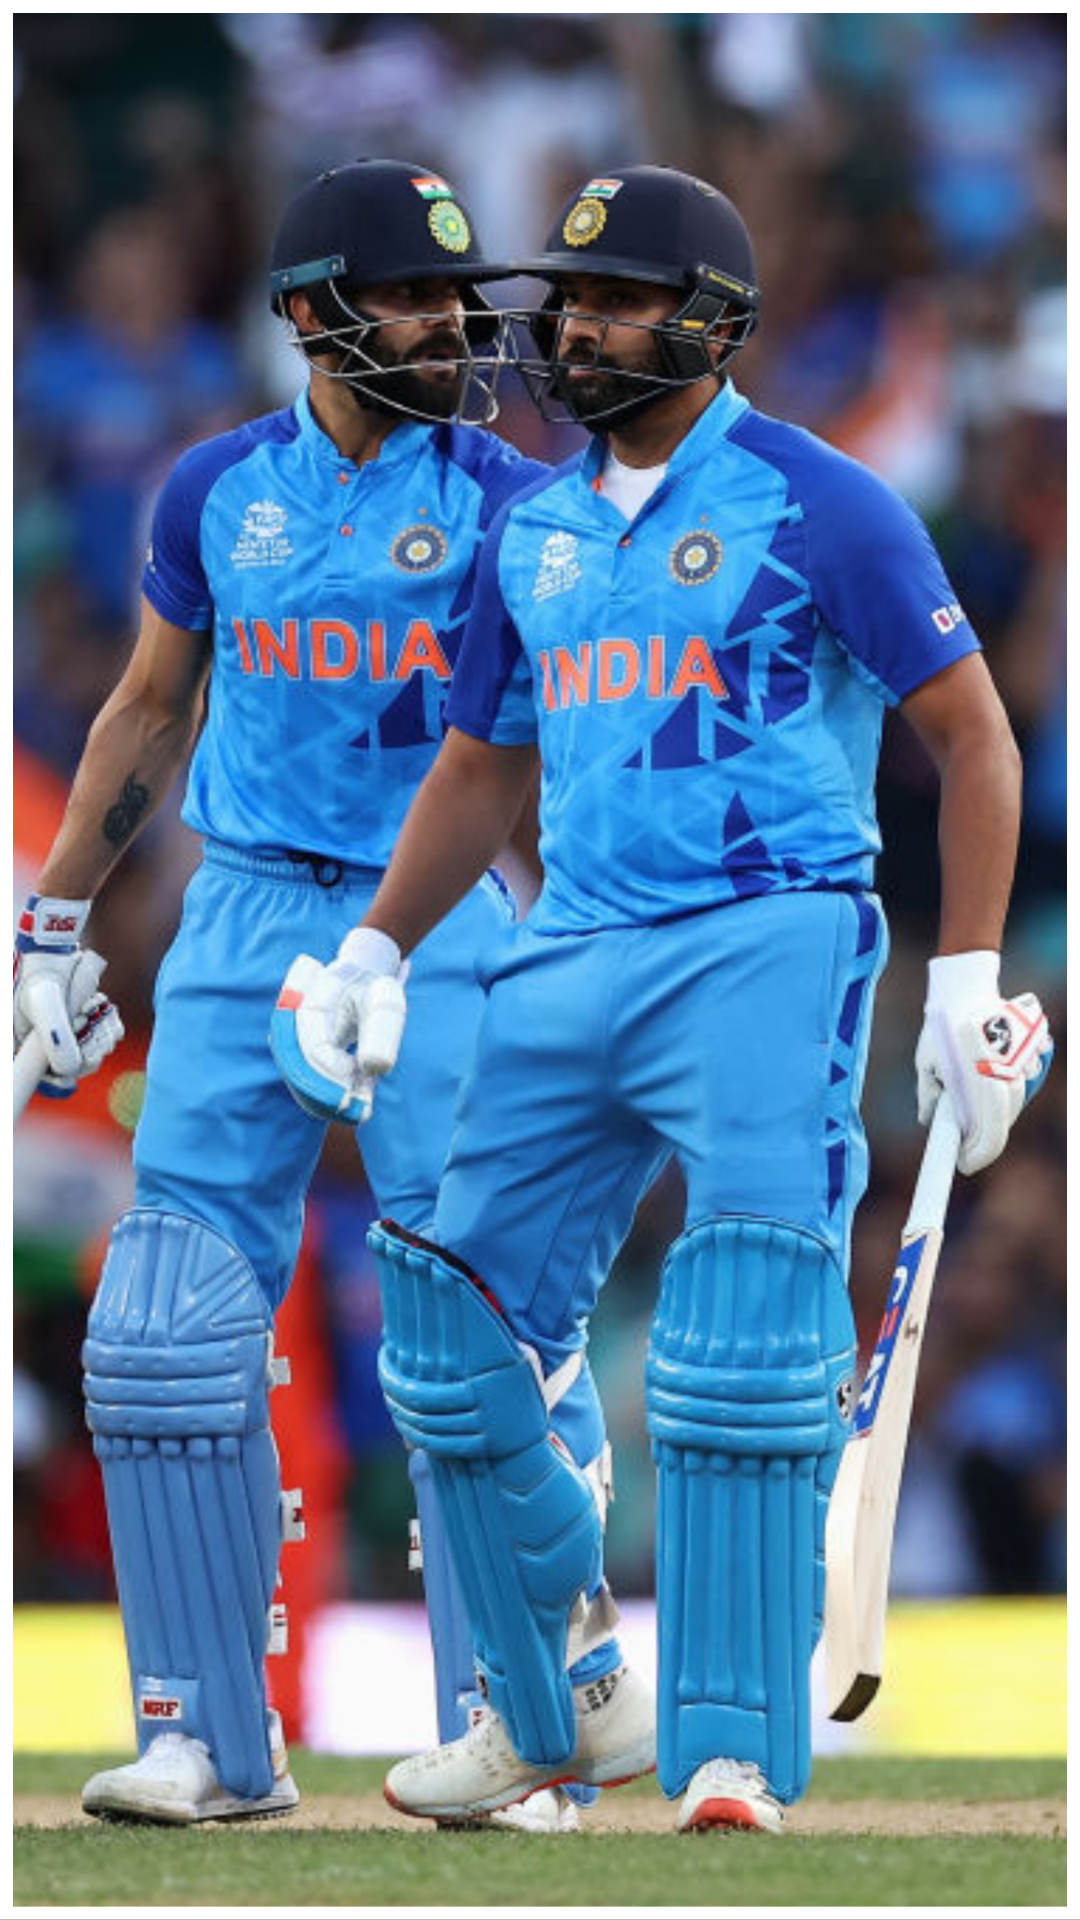 T20s में सबसे ज्यादा रन बनाने वाले बल्लेबाज, जानिए कहां है विराट कोहली और रोहित शर्मा 